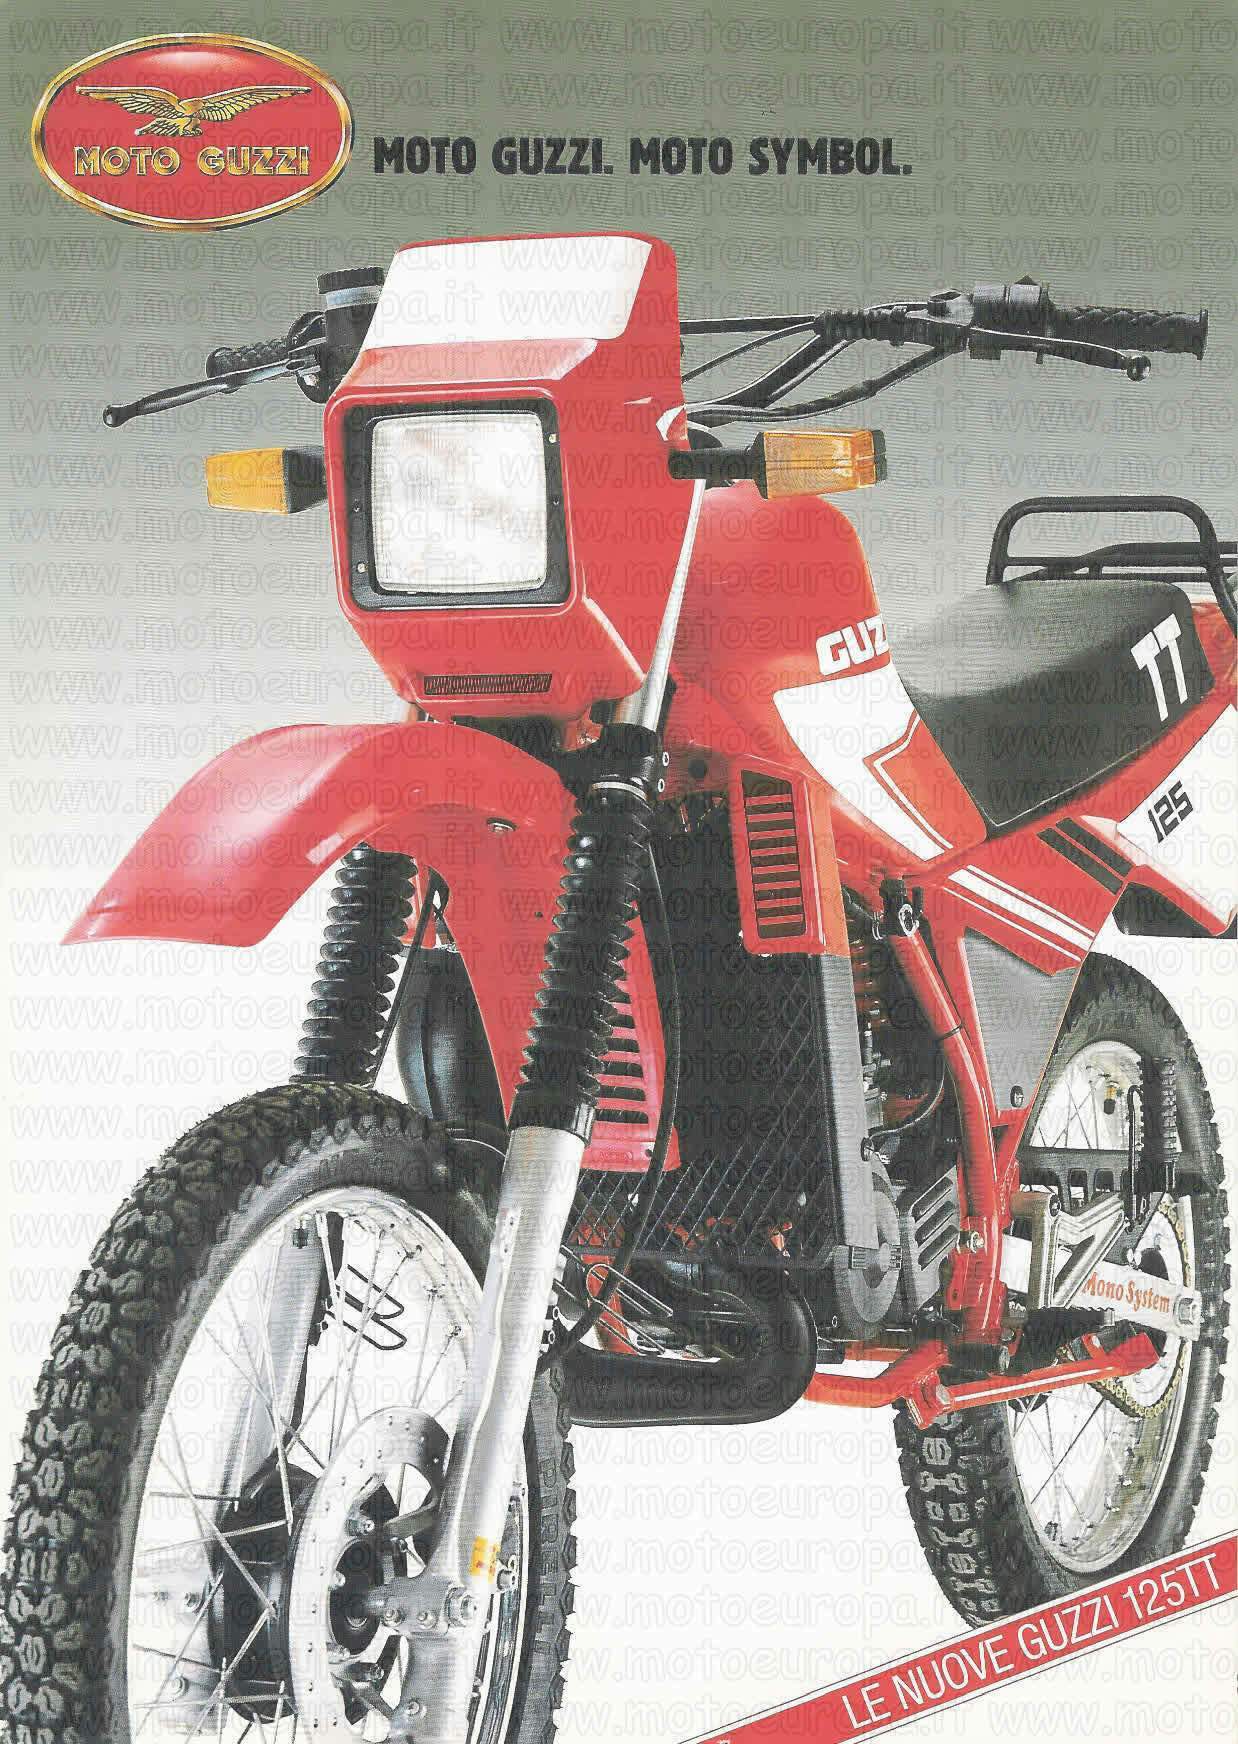 Мотоцикл Moto Guzzi 125TT Tutteterano 1985 фото